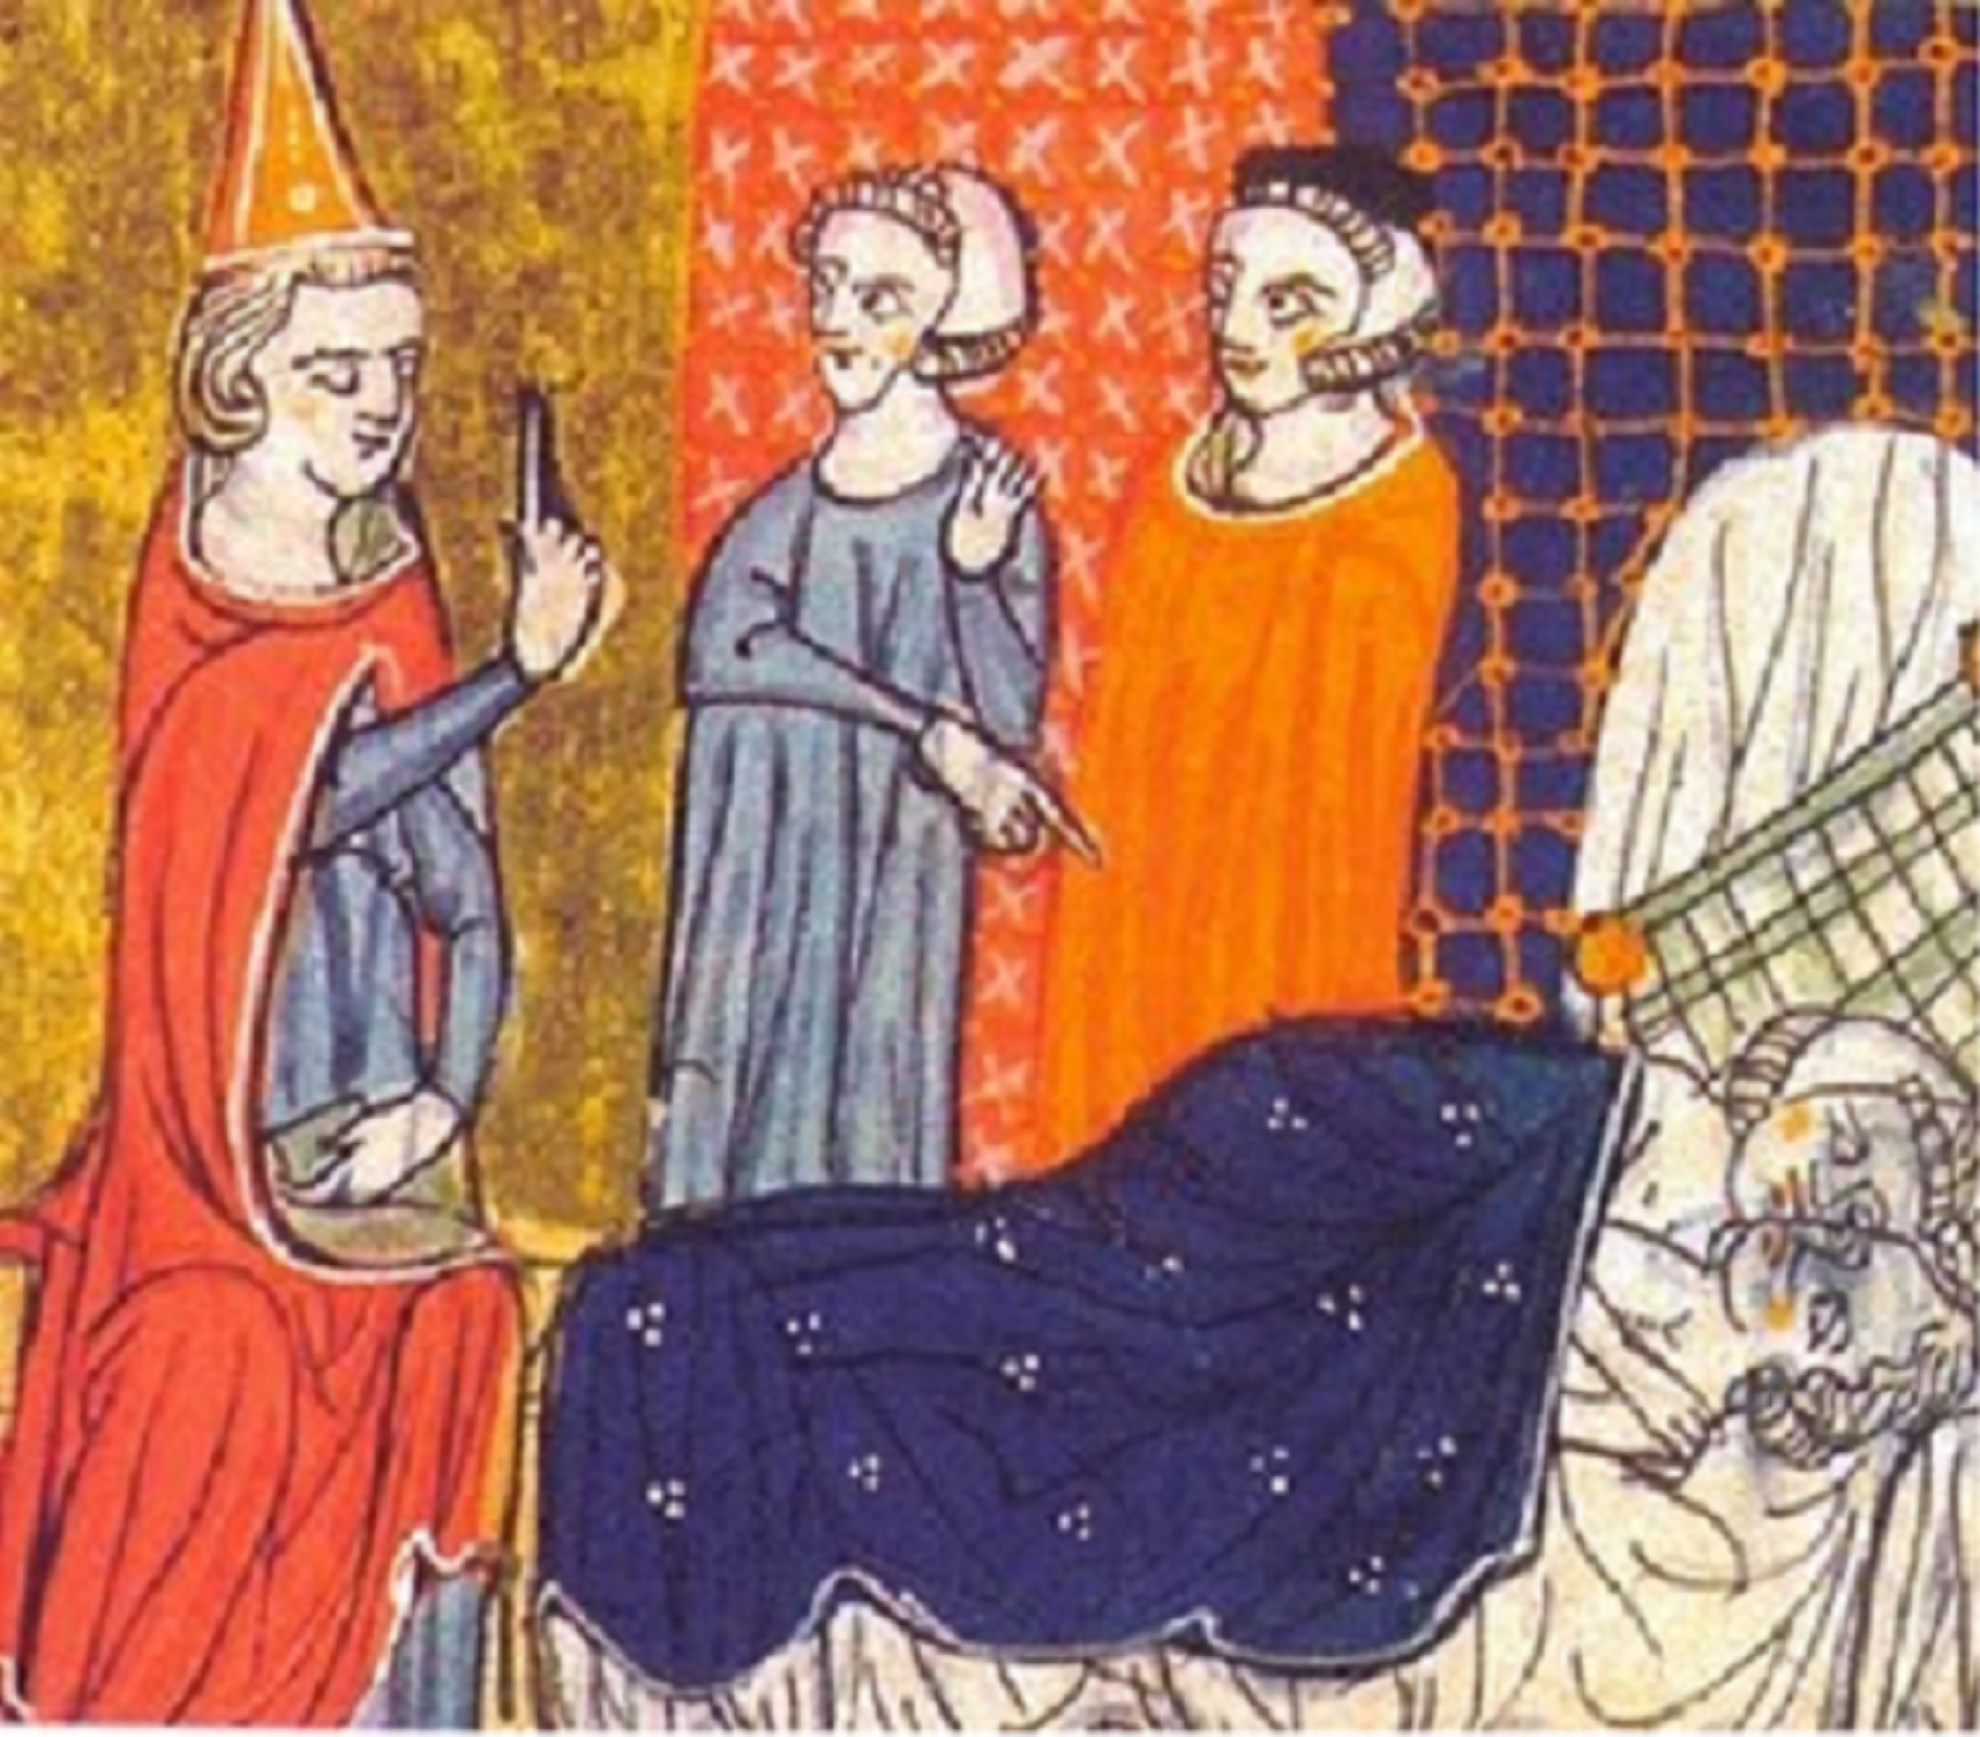 Miniatura que representa Pere i Maria engendrant el futur Jaume I. Font Arxiu de la Corona d'Aragó